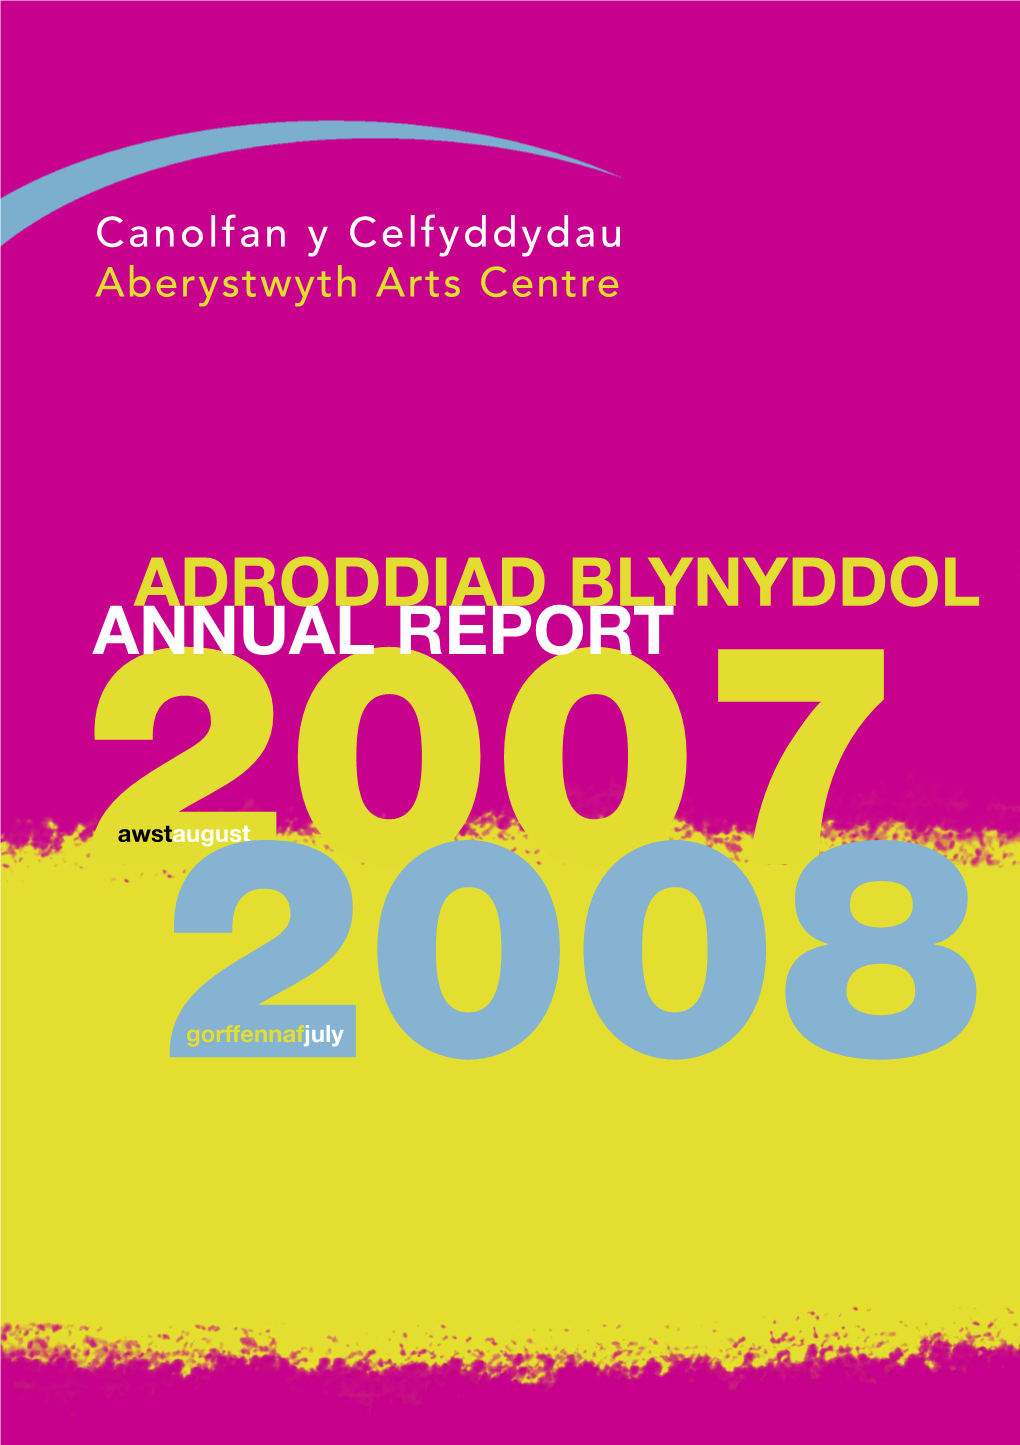 Adroddiad Blynyddol Annual Report